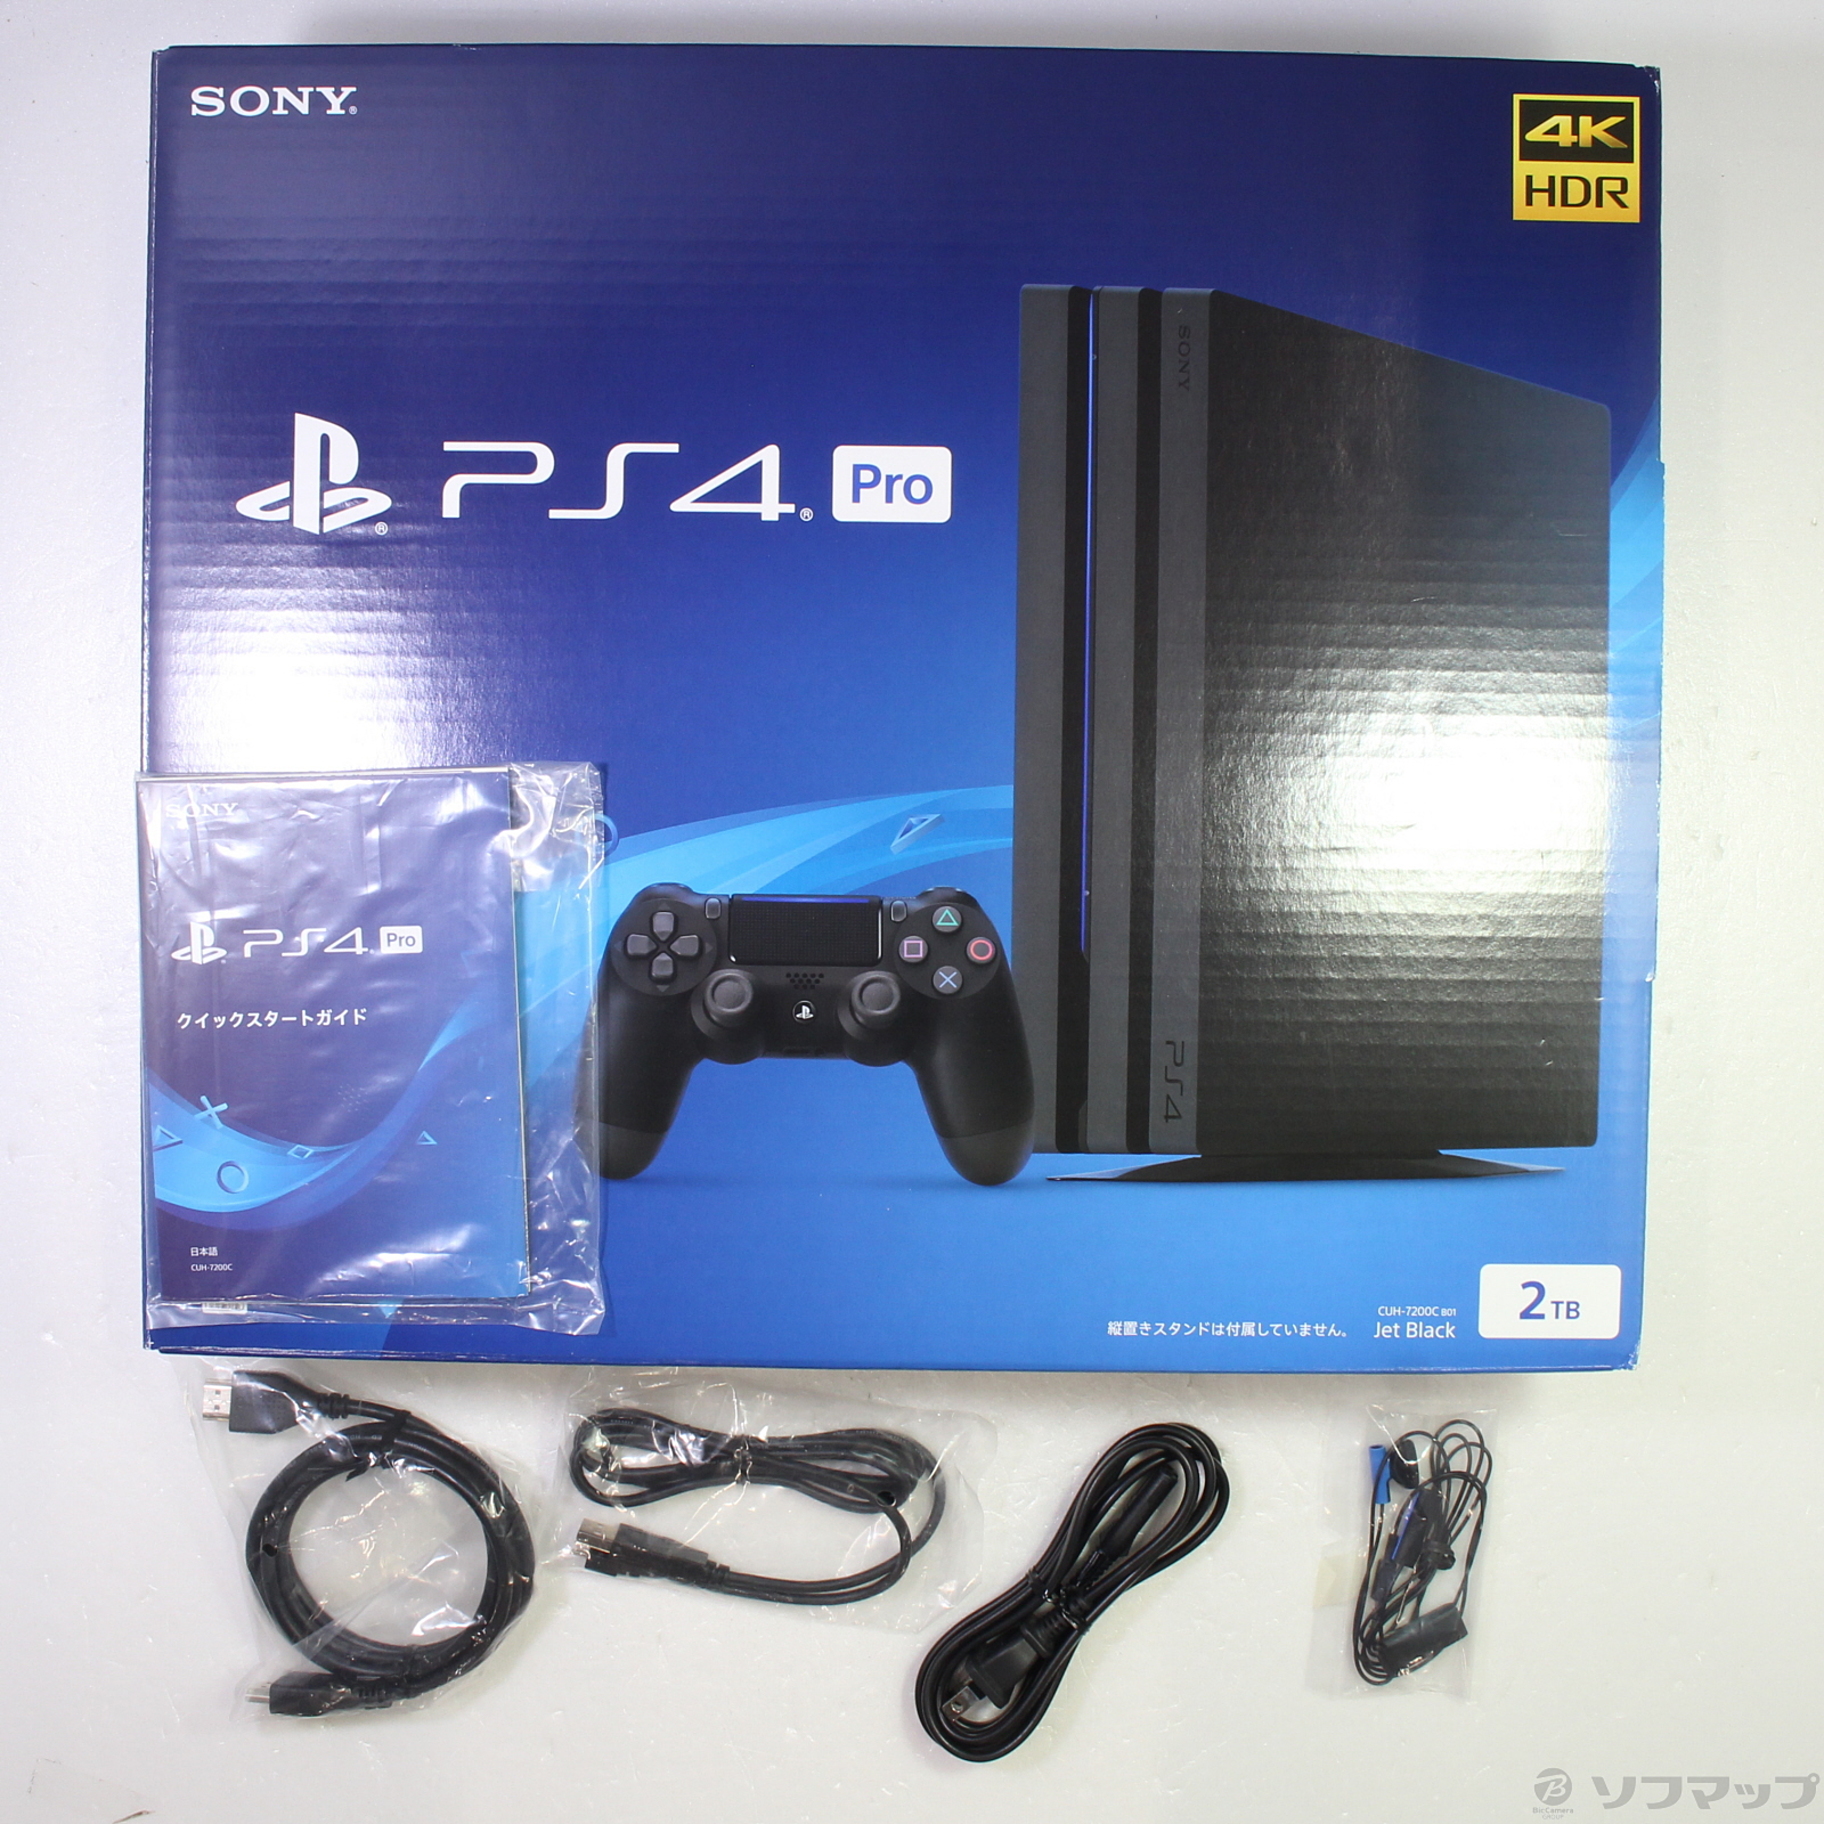 名作-PlayStation 4 Pro ジェット・ブラック 2TB (CUH-7200CB01